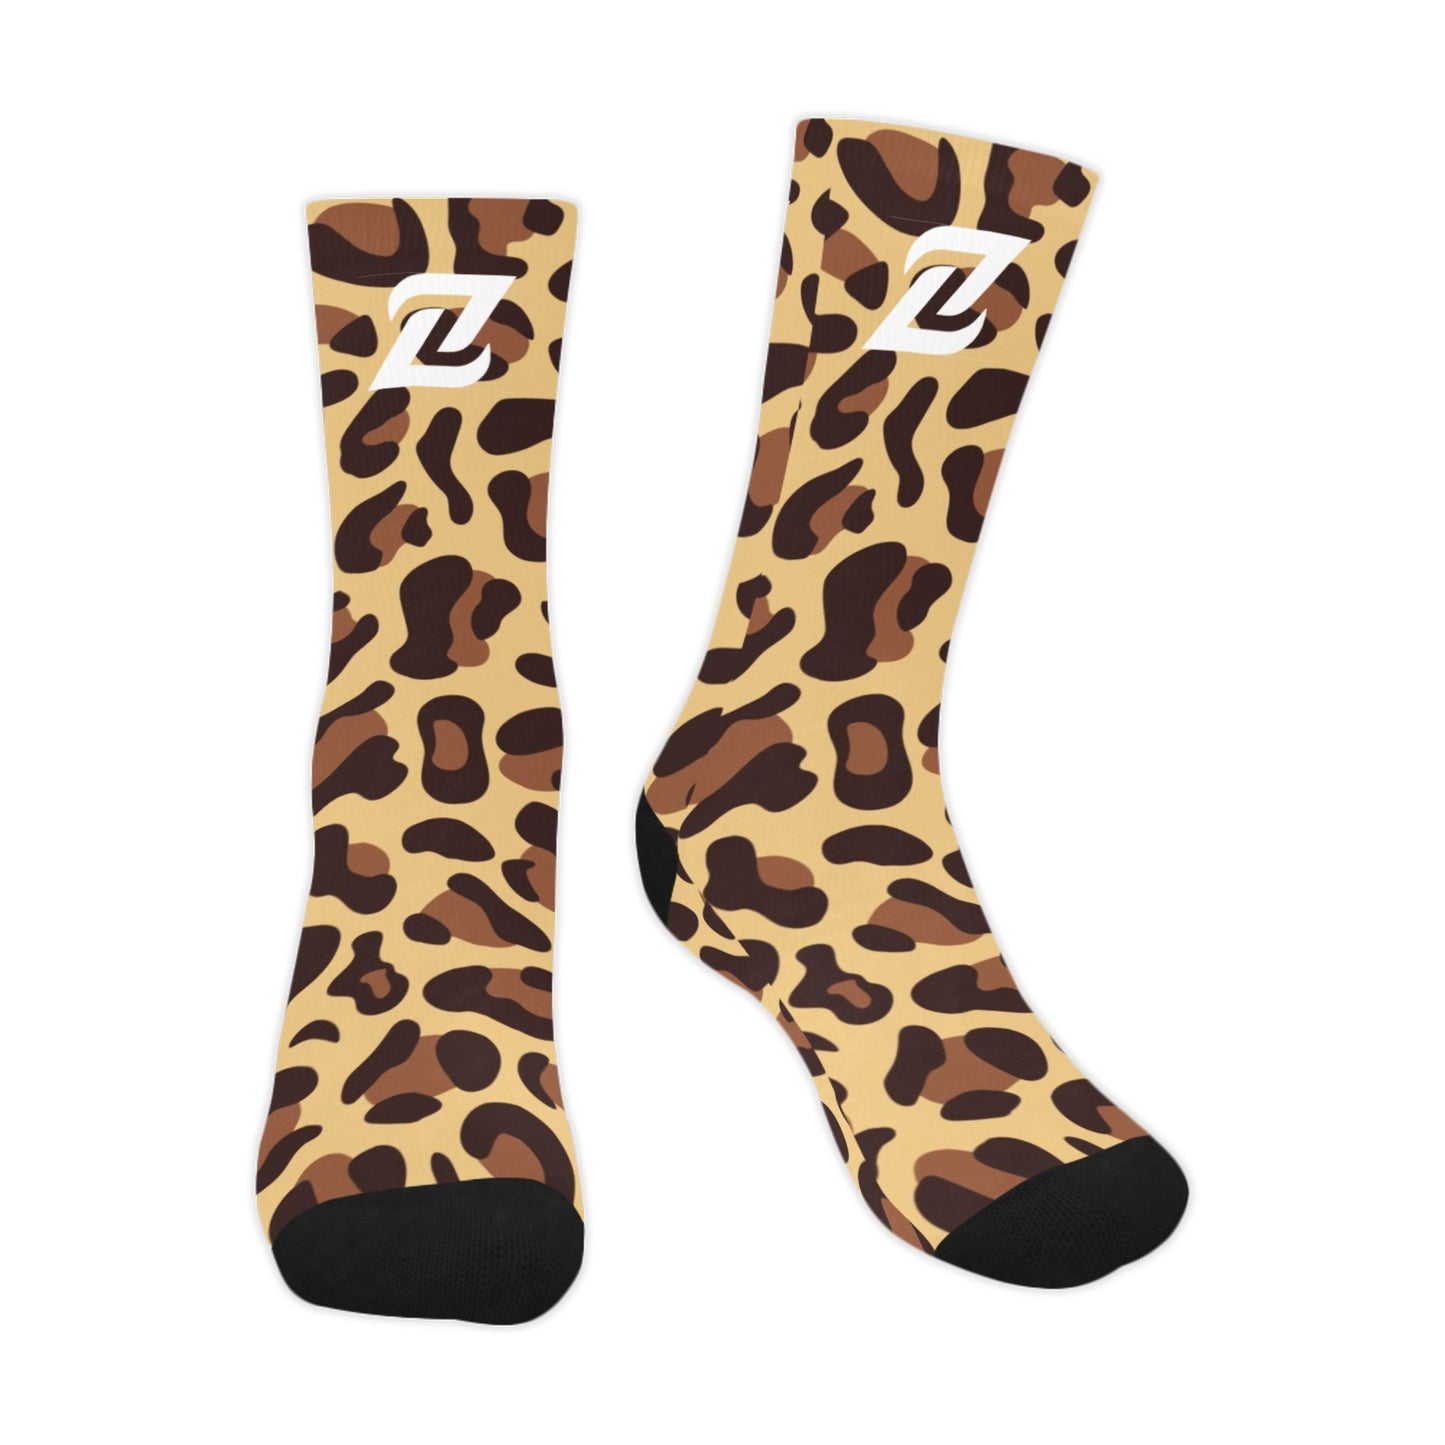 Zen Socks - Leopard Print